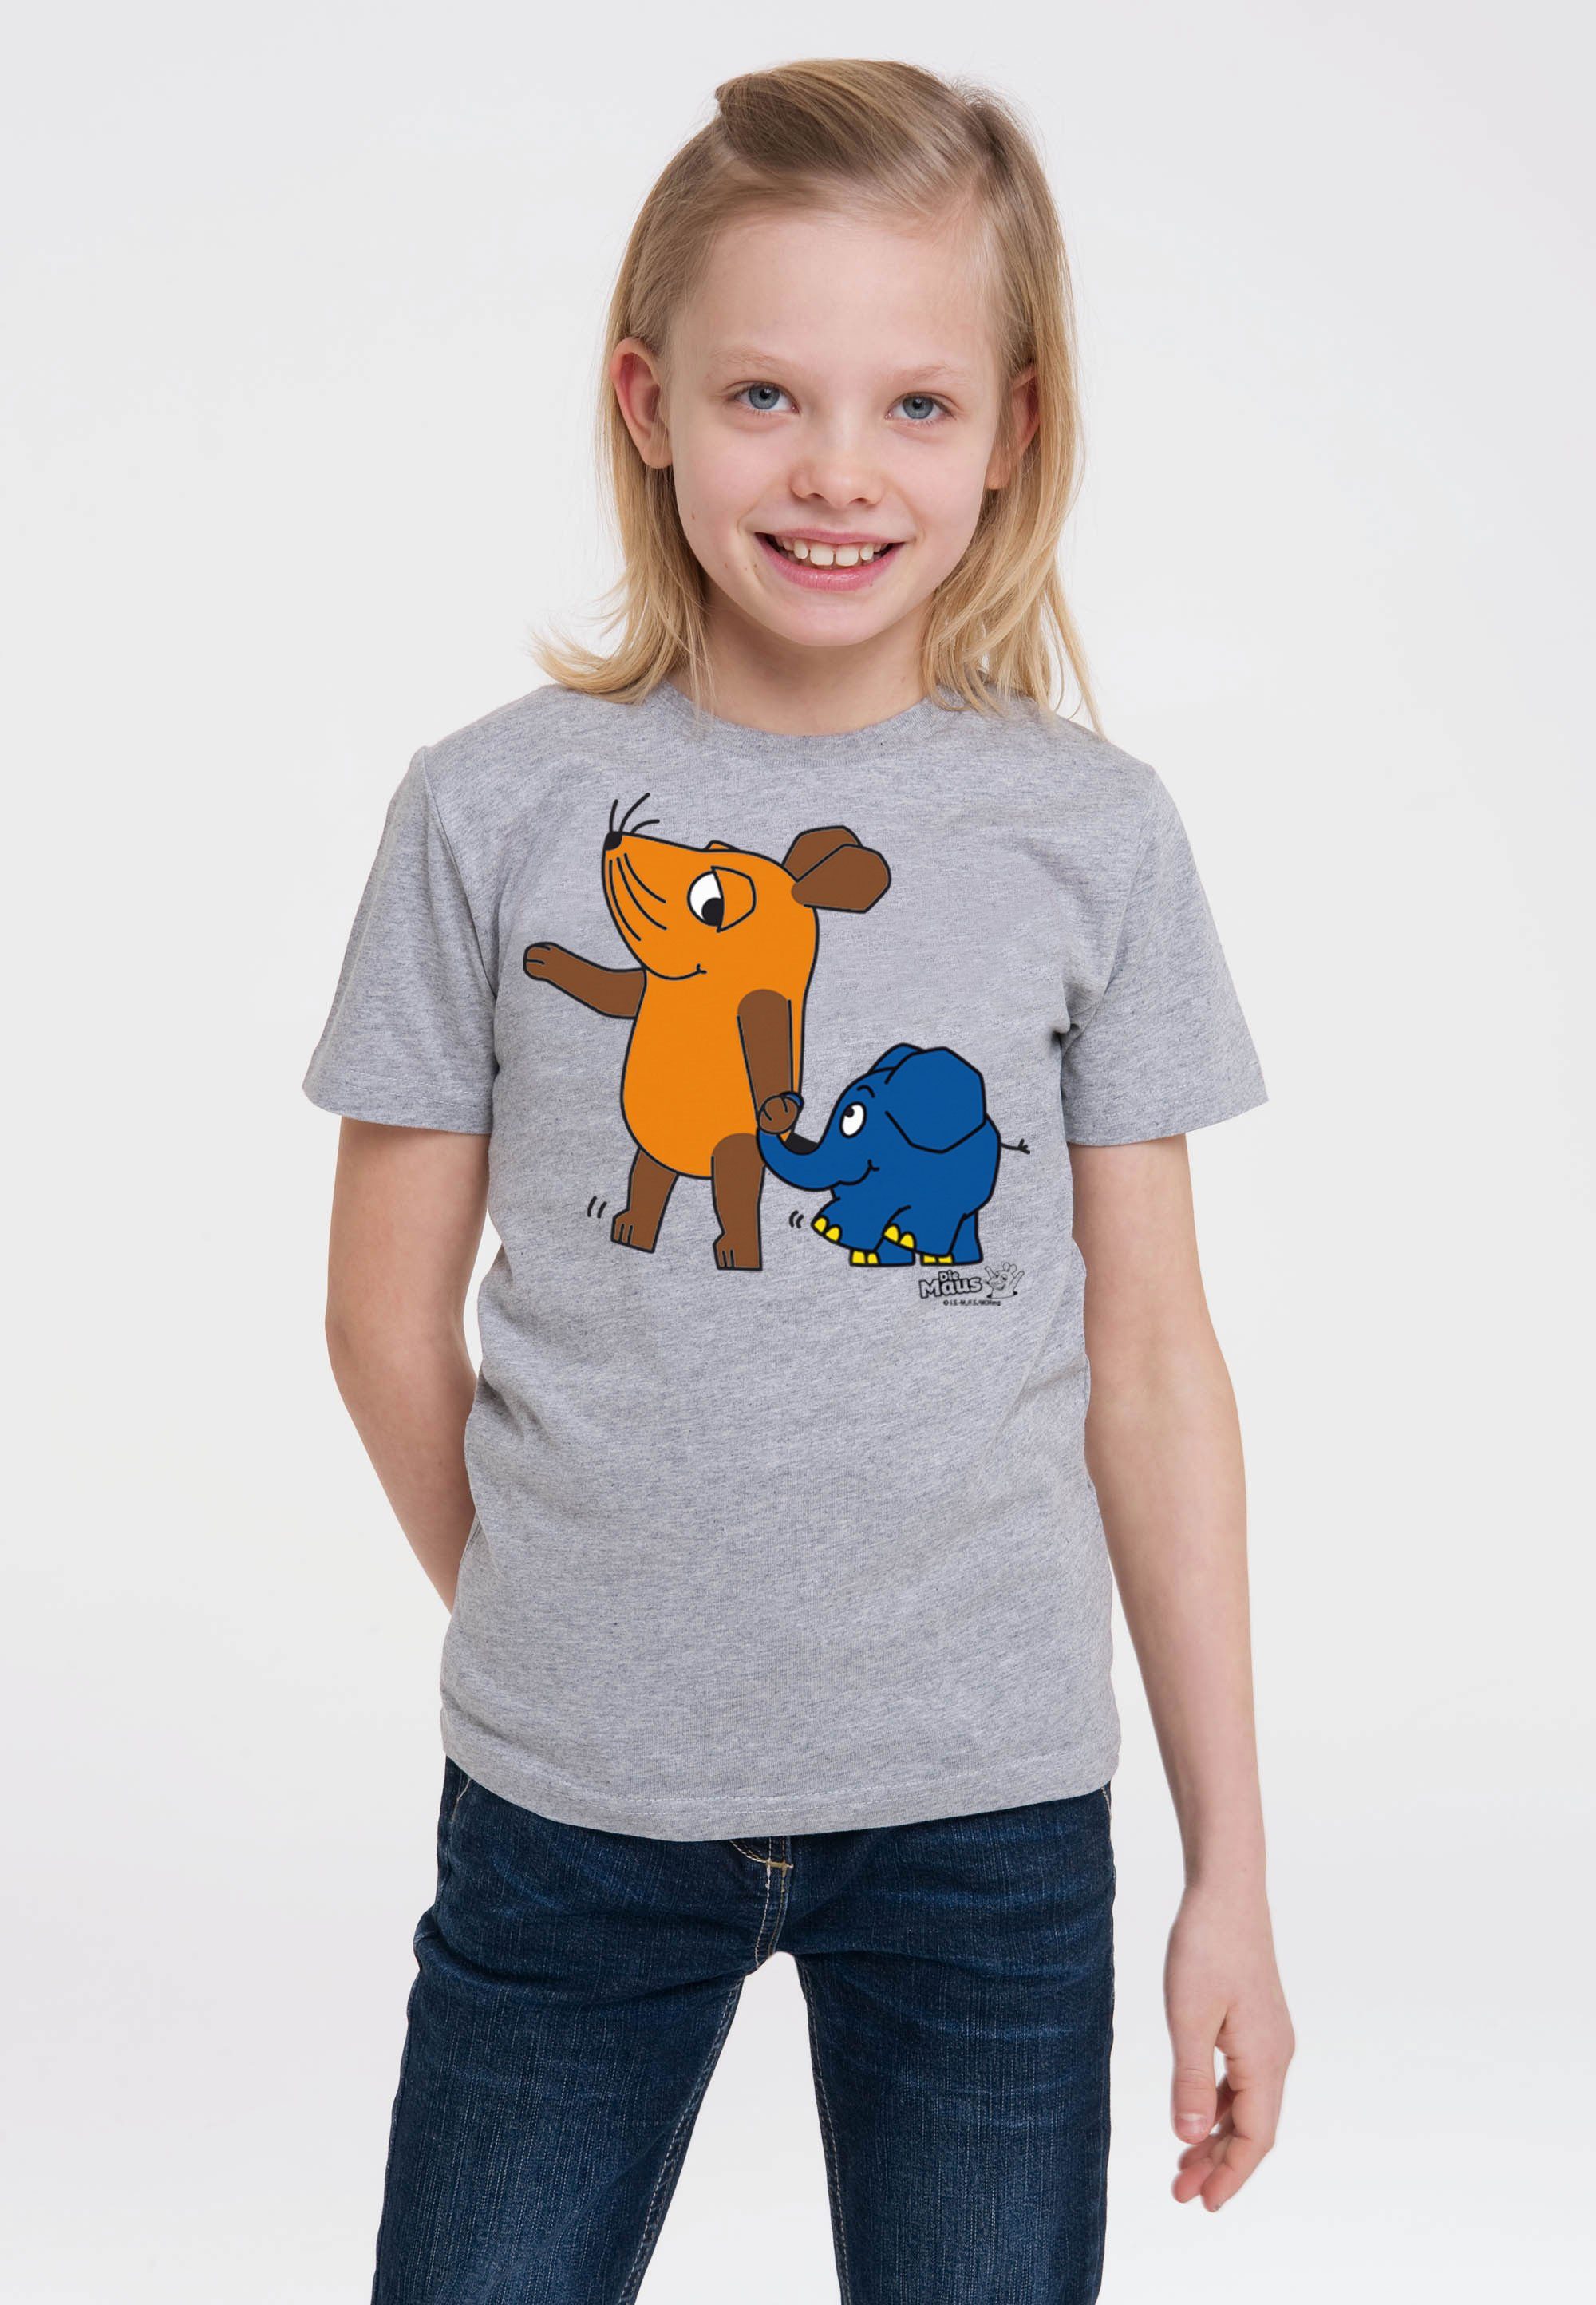 coolem T-Shirt Maus der Elefant Print mit LOGOSHIRT mit & Maus - Sendung